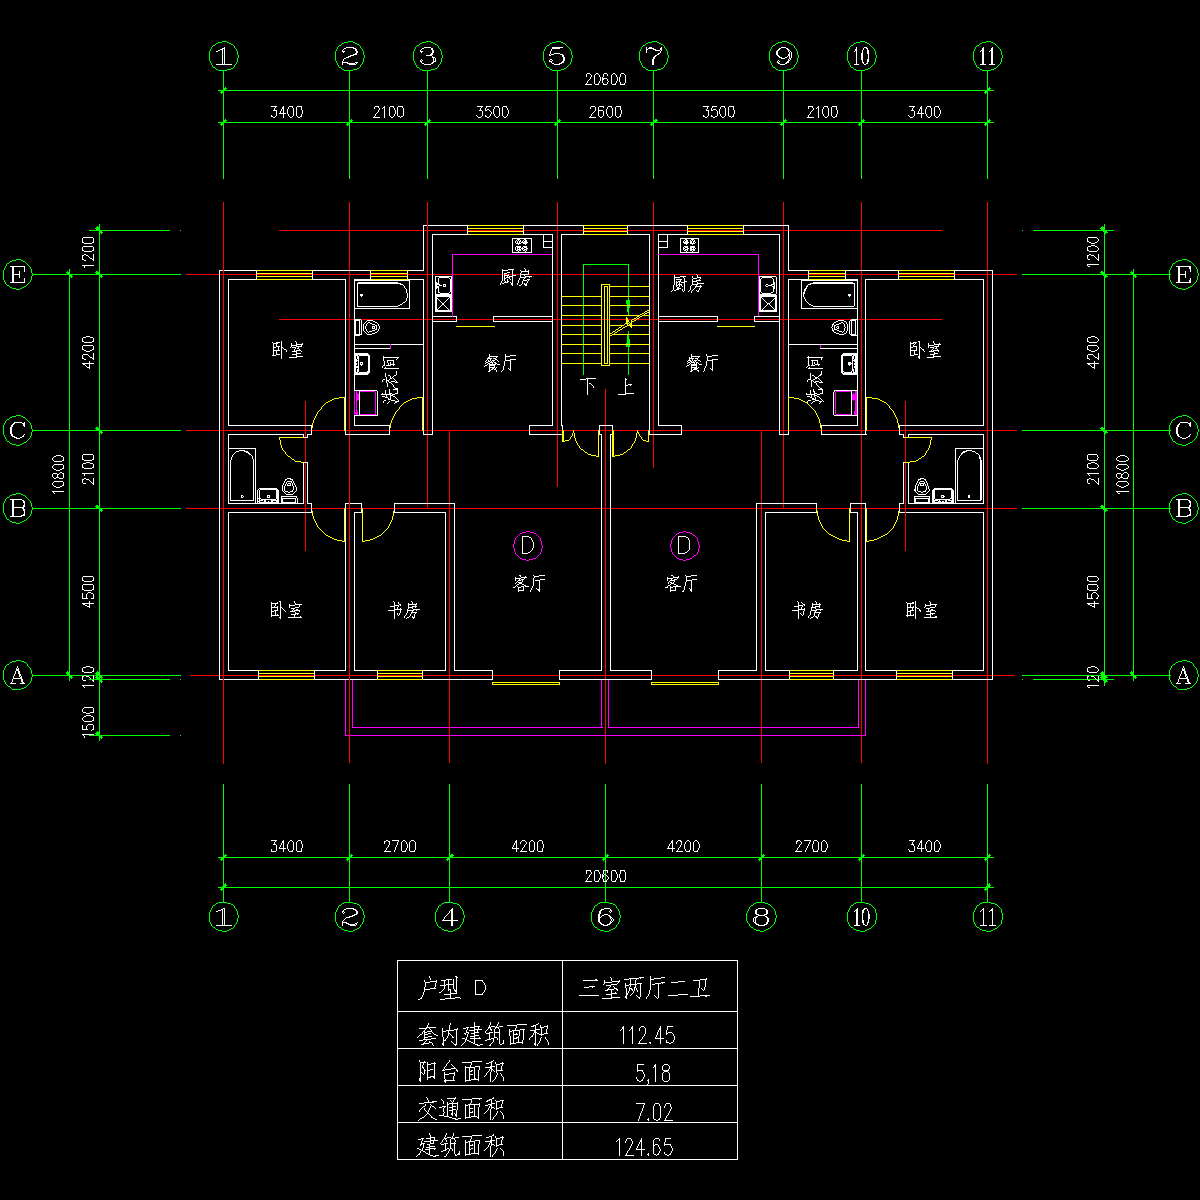 板式多层一梯两户三室二厅二卫户型CAD图纸(125/125)